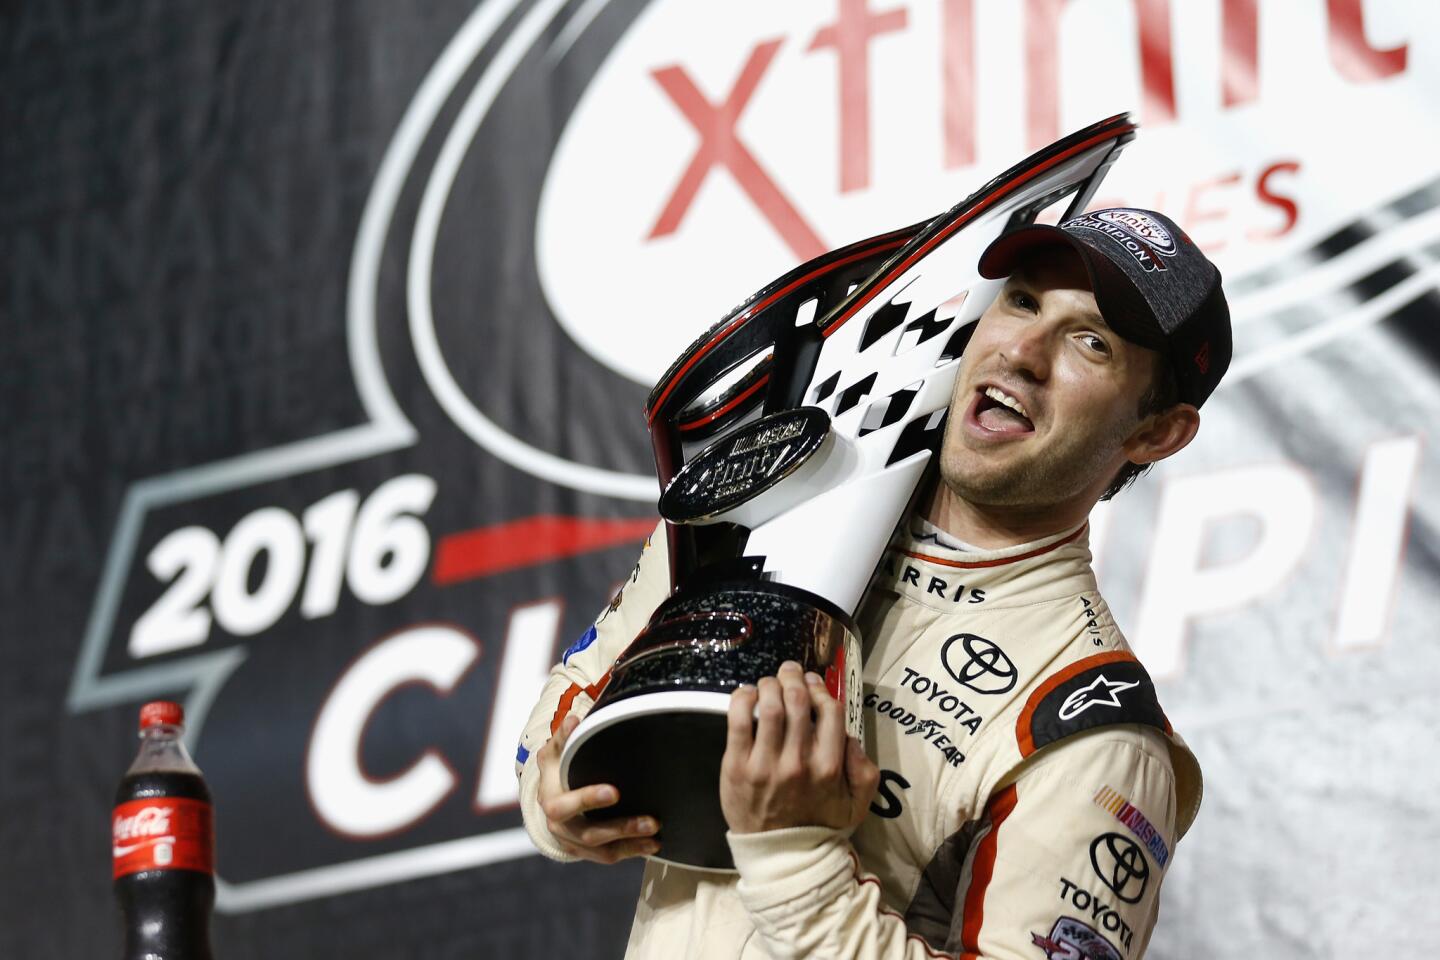 El exicano Daniel Suárez celebra tras convertirse en el primer extranjero en coronarse en una serie nacional de la NASCAR, al ganar la carrera en el circuito de Homestead-Miami, para apoderarse del título en la categoría Xfinity.